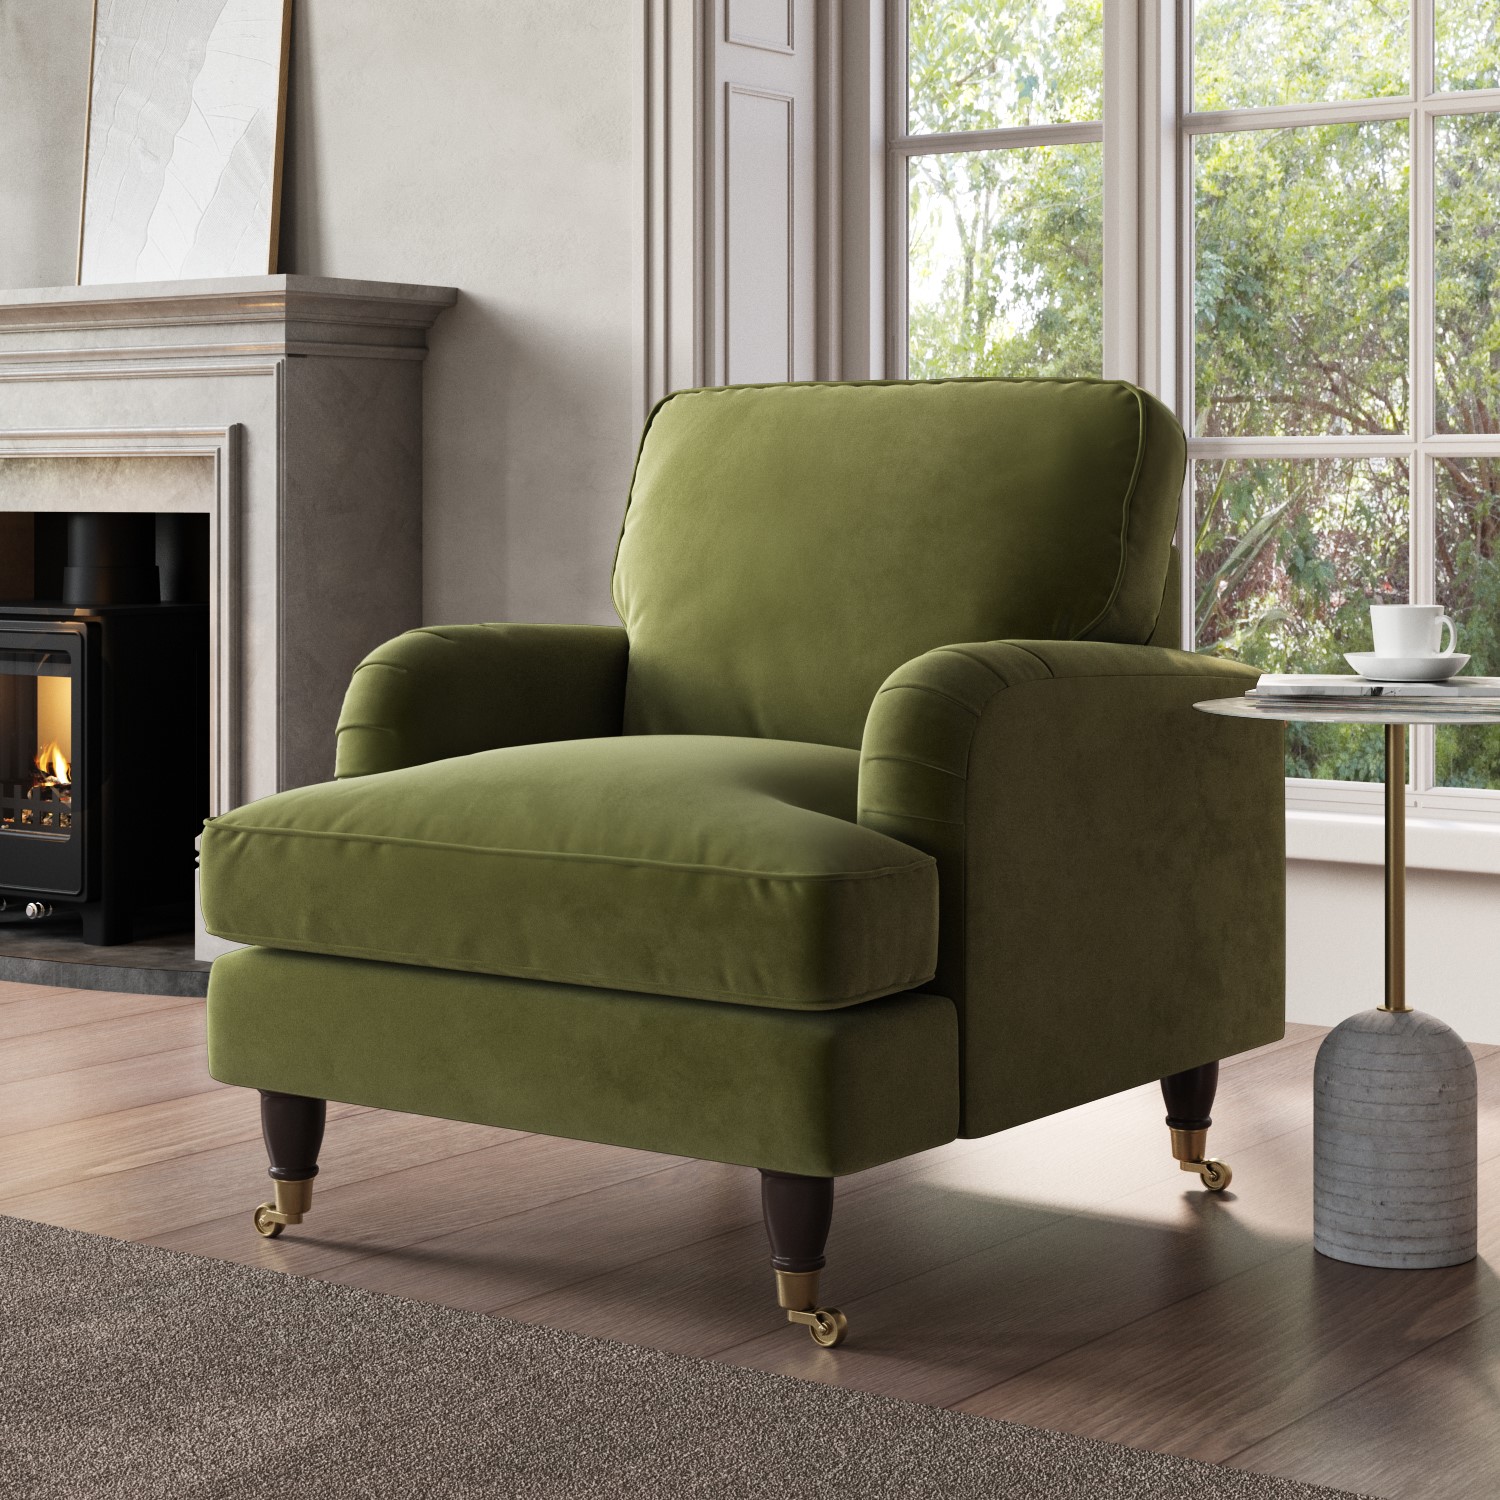 Photo of Olive green velvet armchair - payton